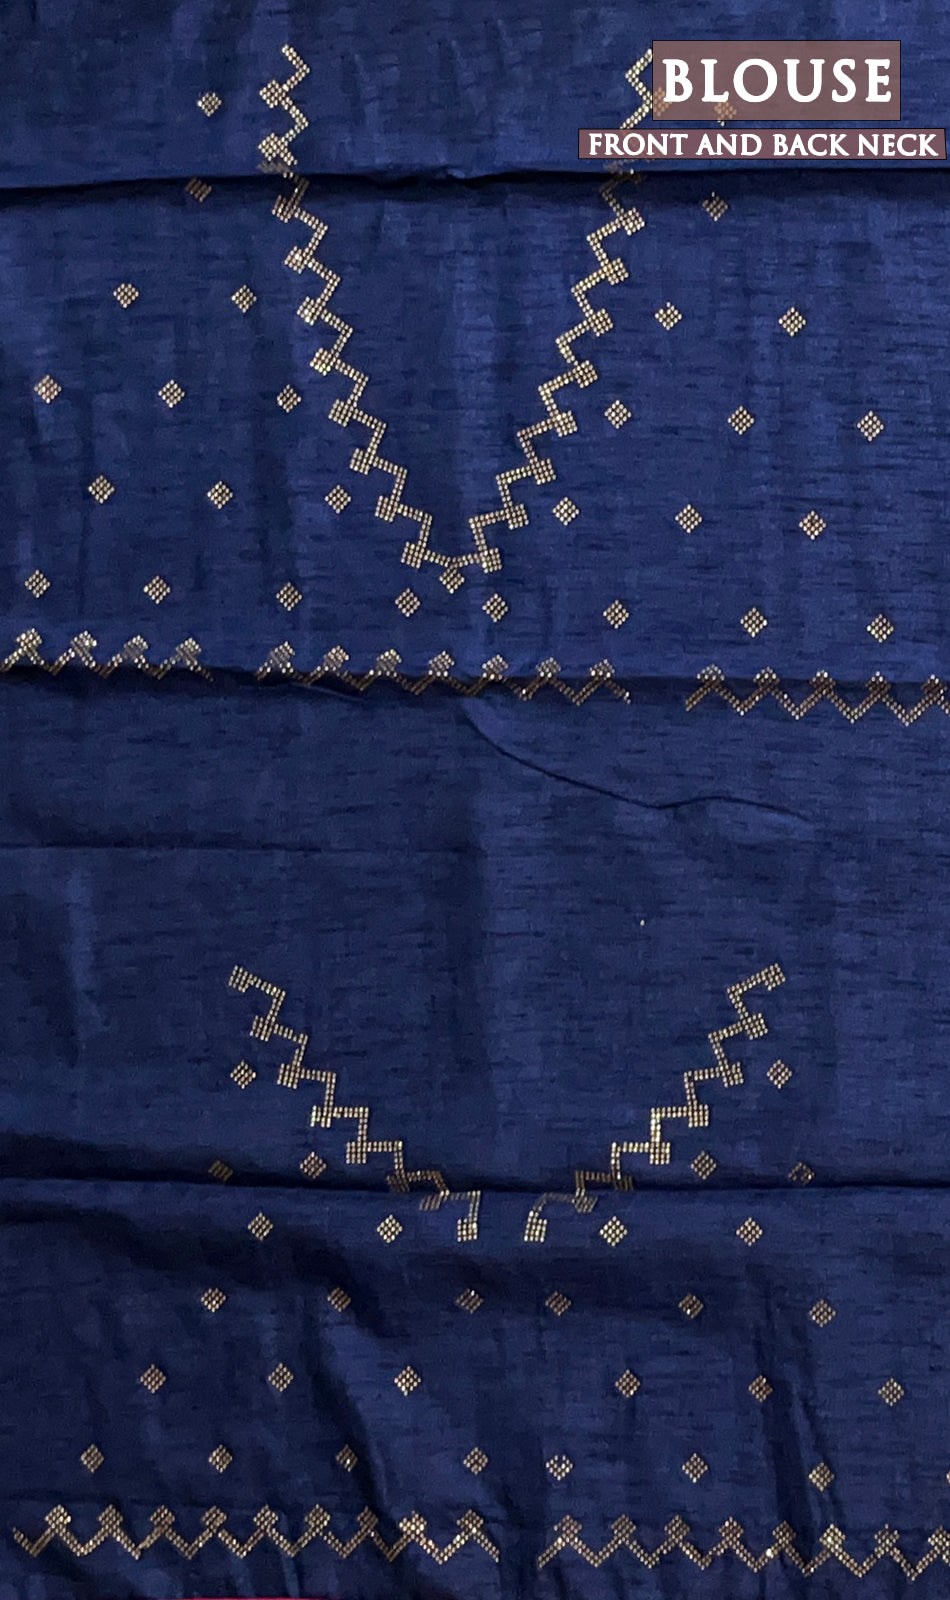 Dual shade of peacock blue satin silk saree